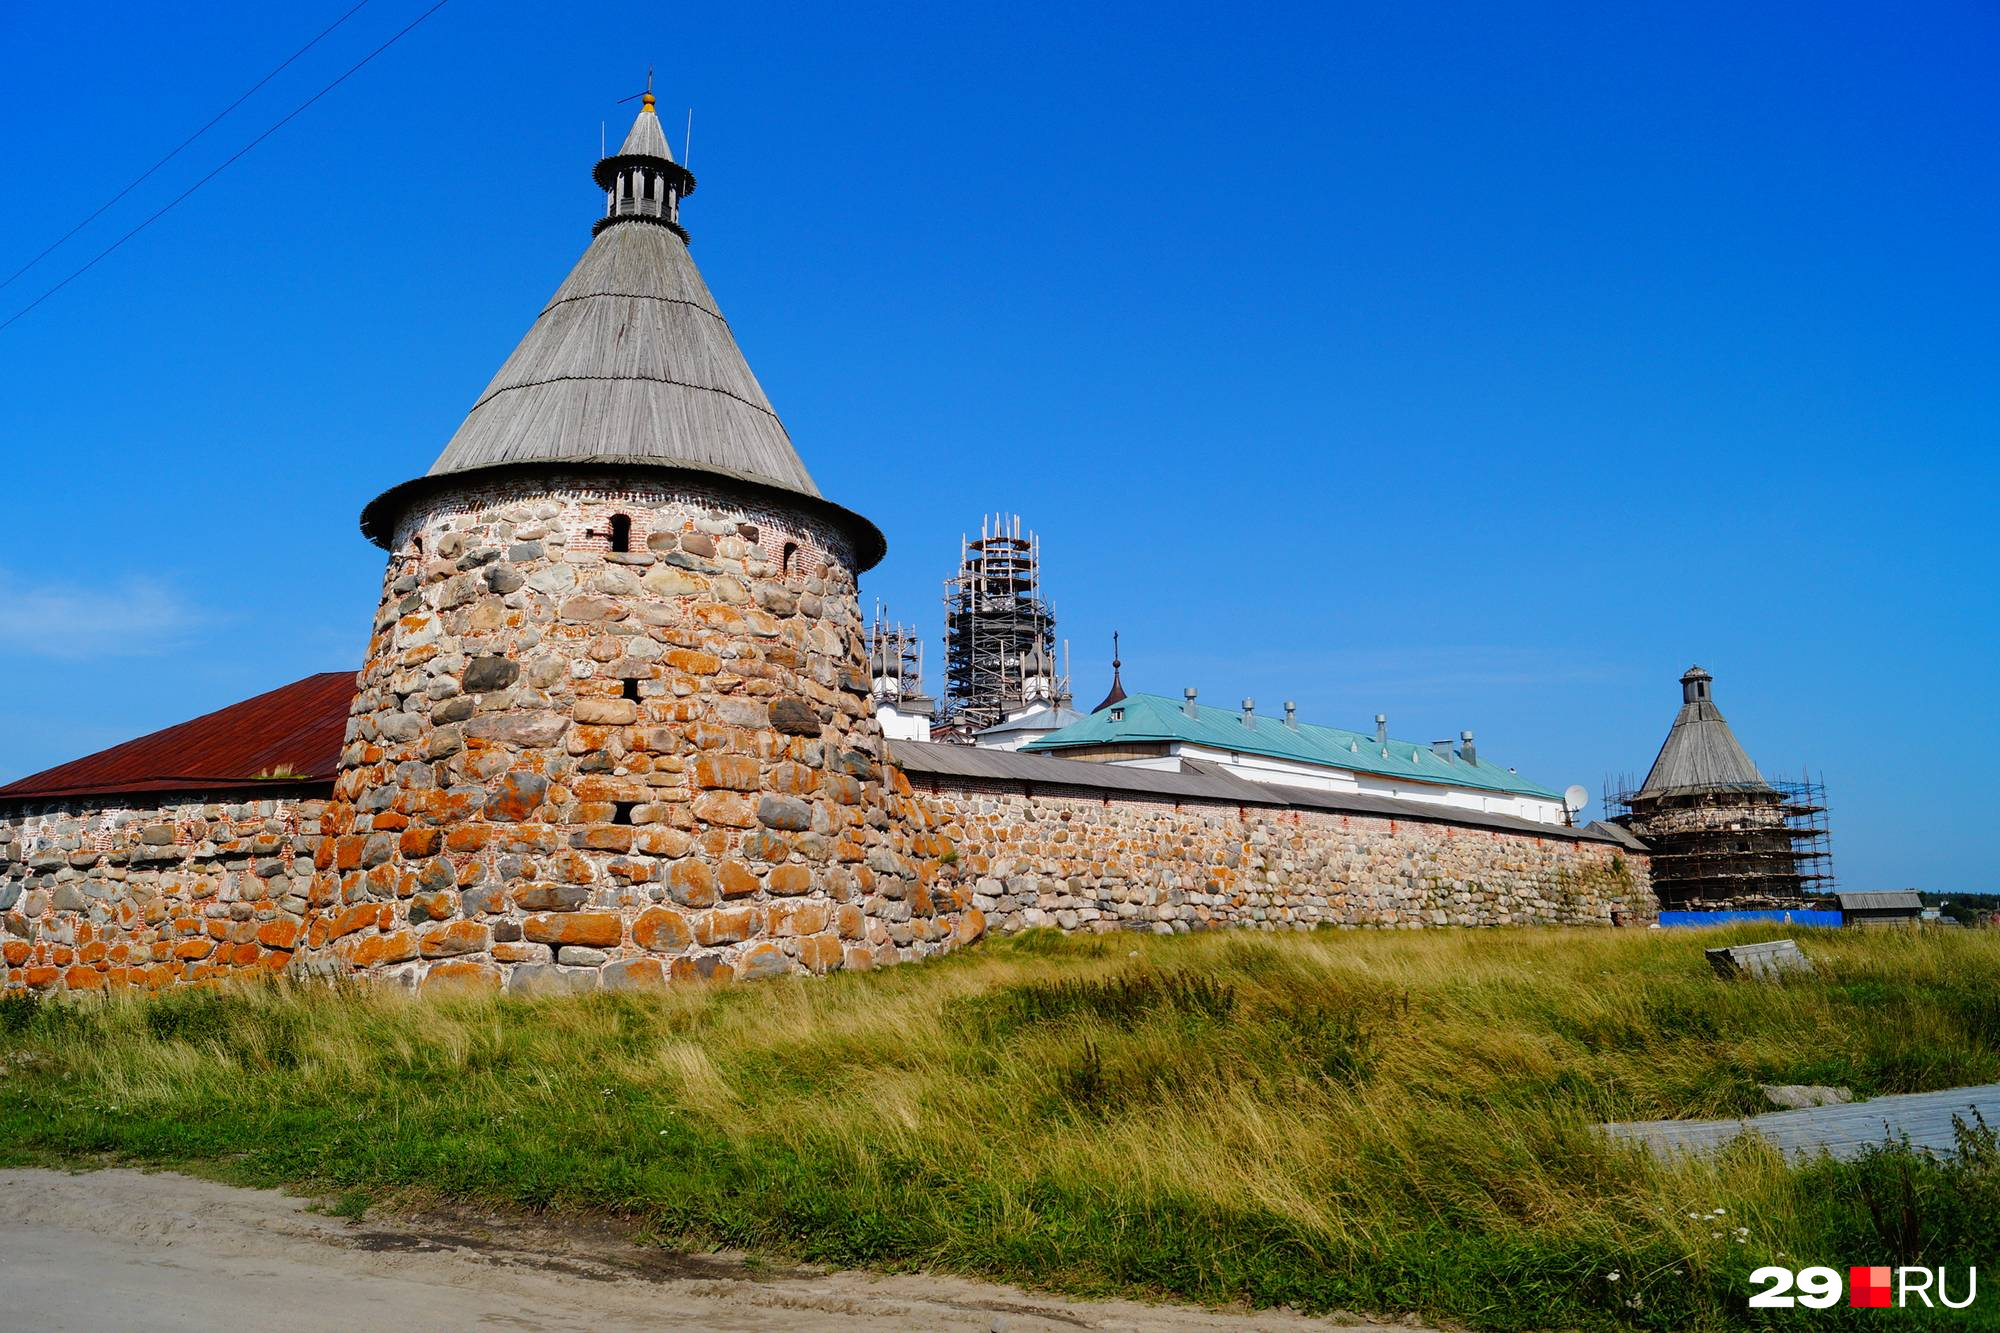 Жители говорят, что в первую очередь финансирование направлено на монастыри и памятники Соловков, а не на поселок